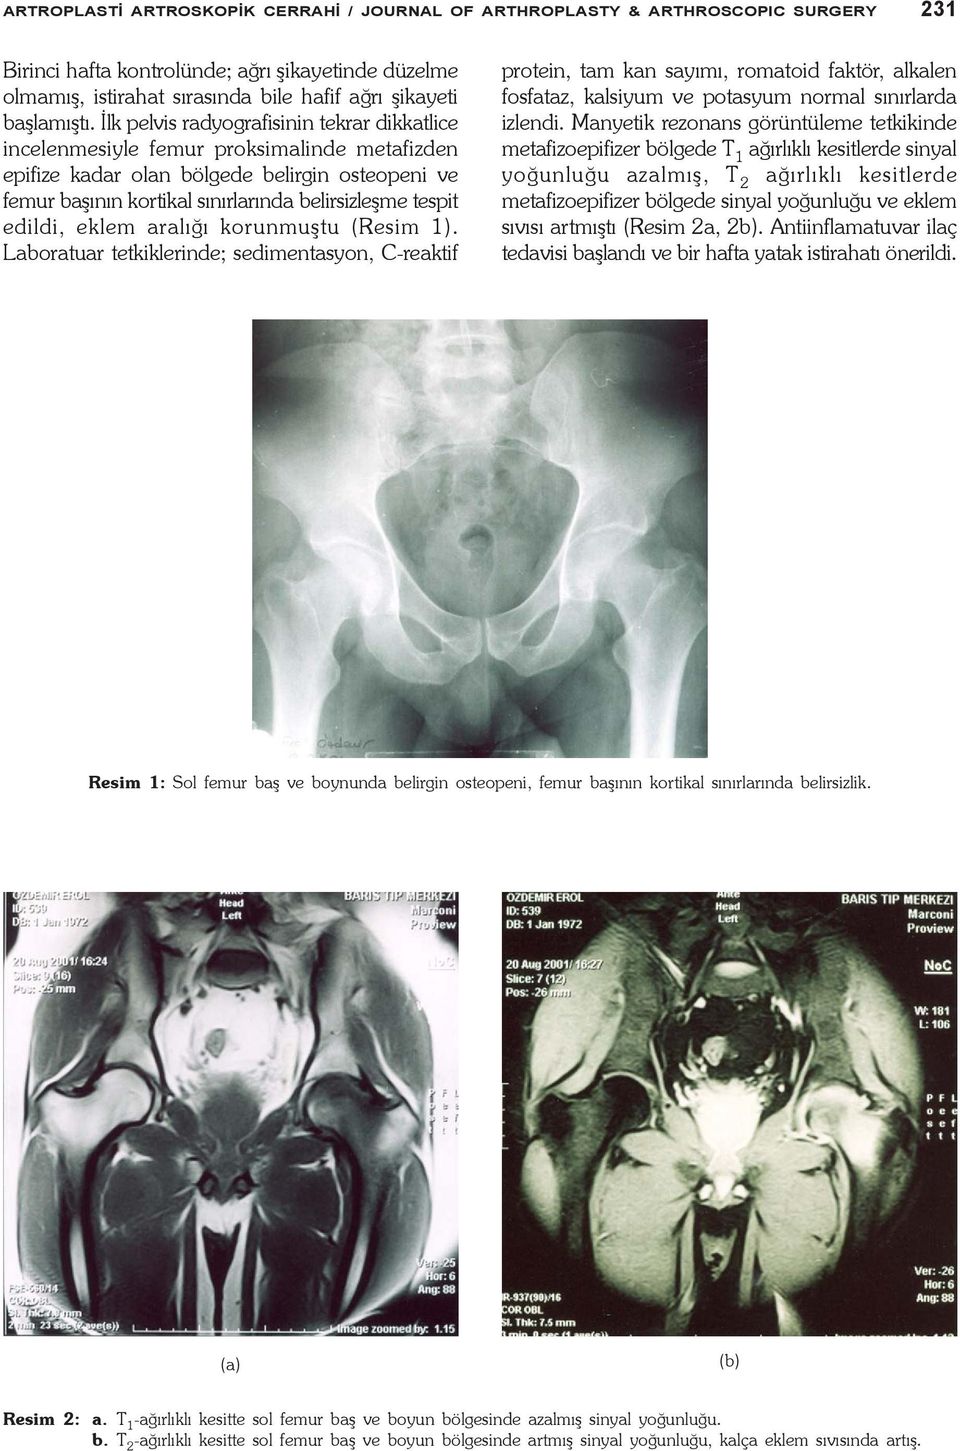 Ýlk pelvis radyografisinin tekrar dikkatlice incelenmesiyle femur proksimalinde metafizden epifize kadar olan bölgede belirgin osteopeni ve femur baþýnýn kortikal sýnýrlarýnda belirsizleþme tespit